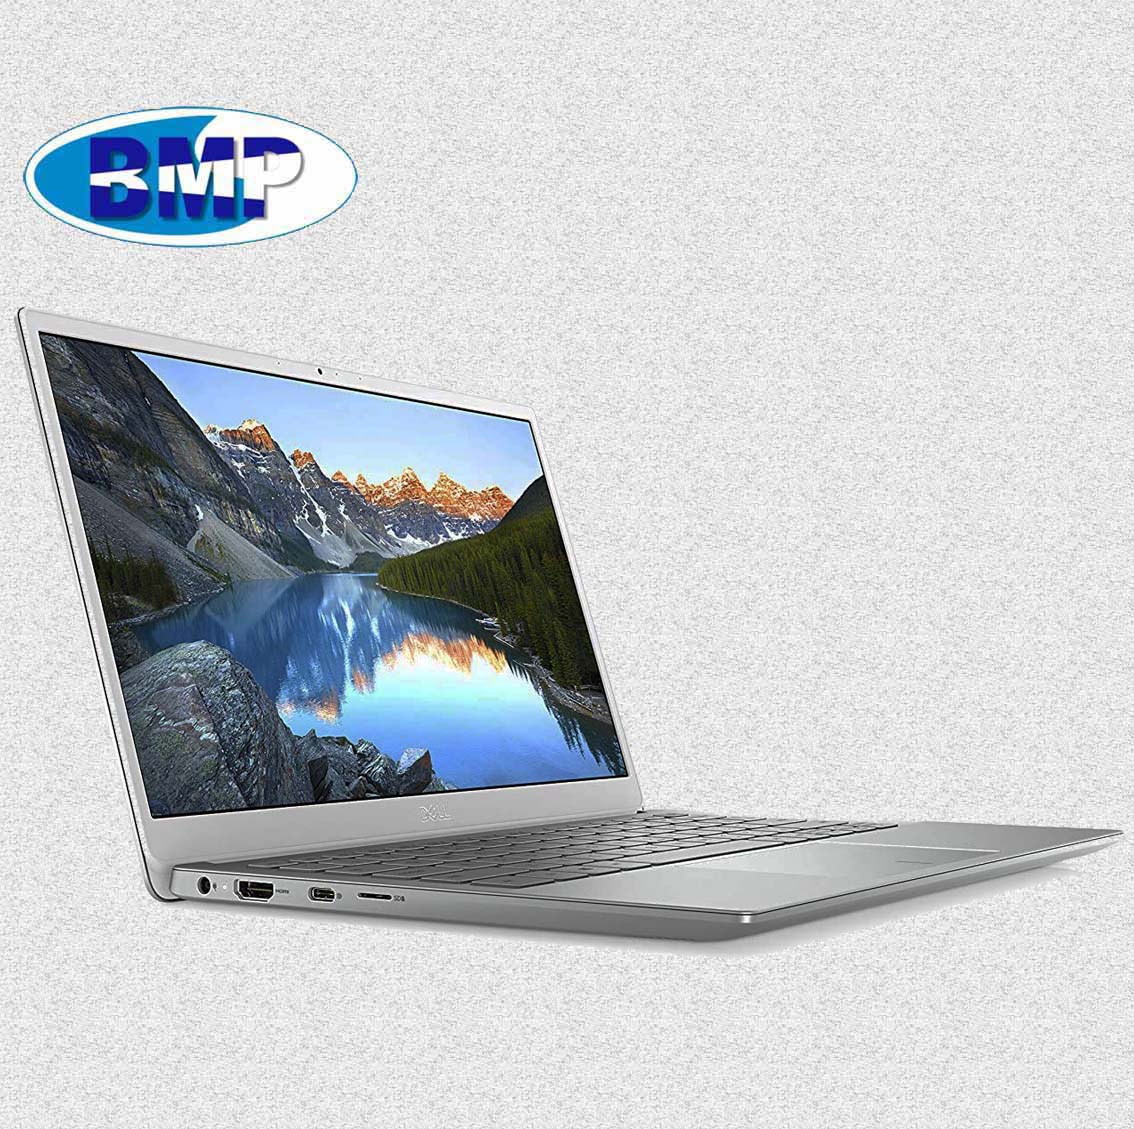 Laptop Dell Inspiron 5390 i5 8265U/ 8GB/ 256GB SSD Pcie/MX250 2Gb/ 13.3"FHD / Win10